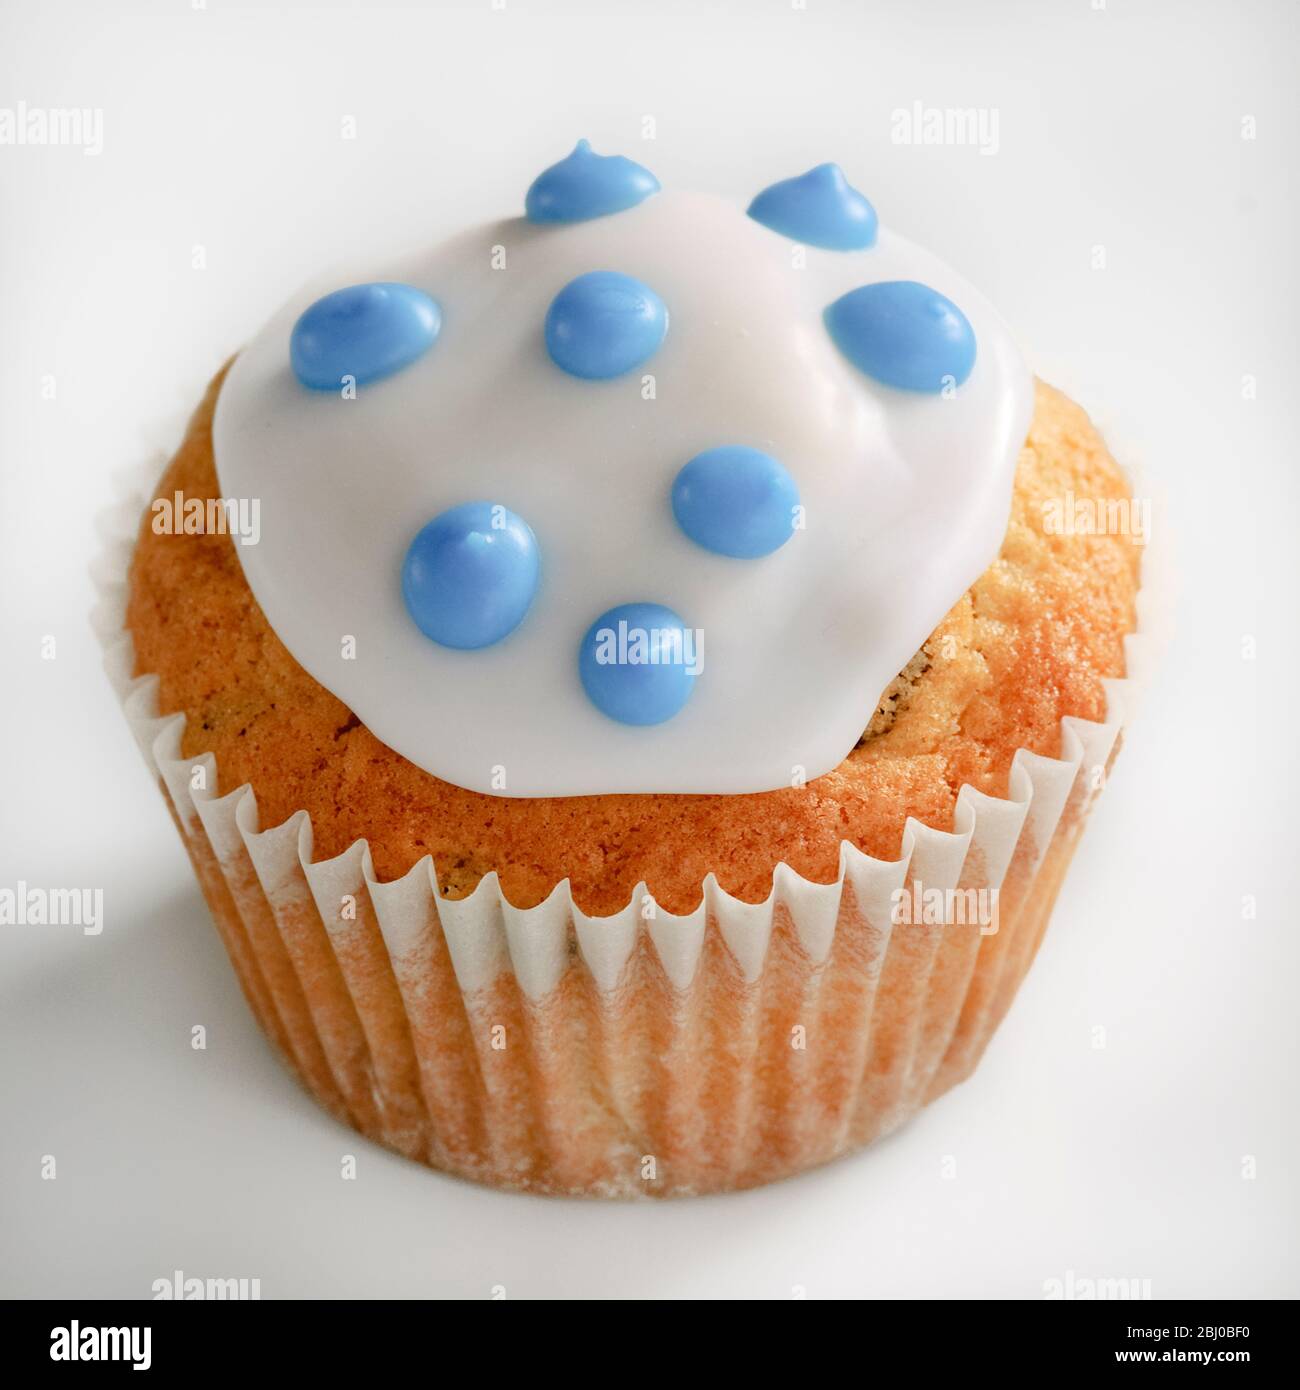 Eiskuchen mit blauen Flecken auf weißem Glasur - Stockfoto